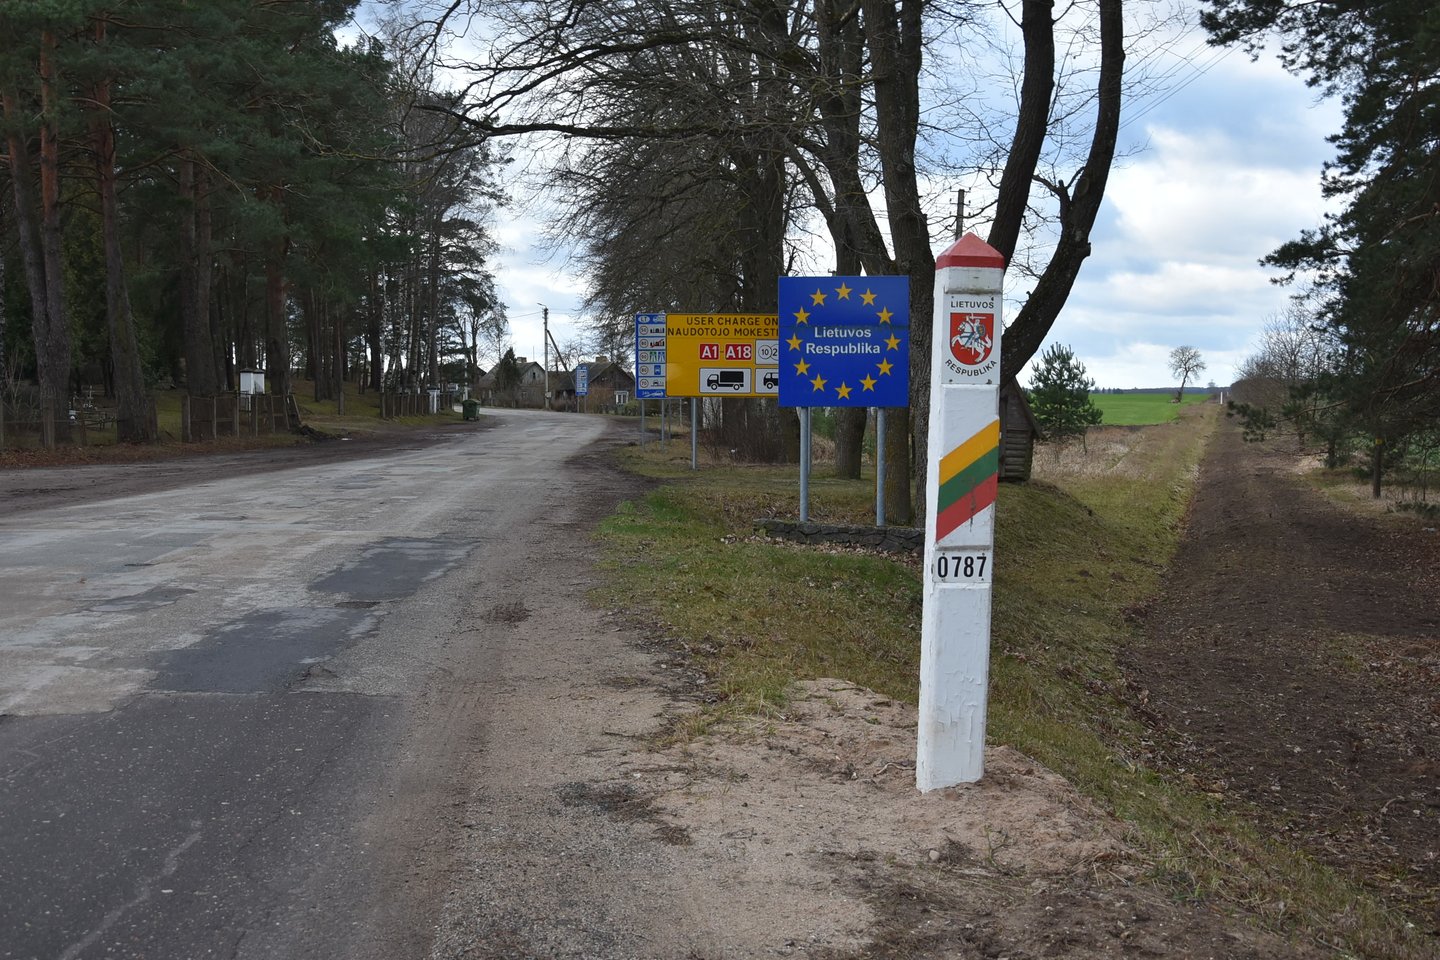 Posėdžio metu Vyriausybė nusprendė leisti iki kovo 26 d. asmenų, kurie grįžta į savo gyvenamąją vietą, tranzitą per Lietuvos teritoriją be būtinojo sustojimo.